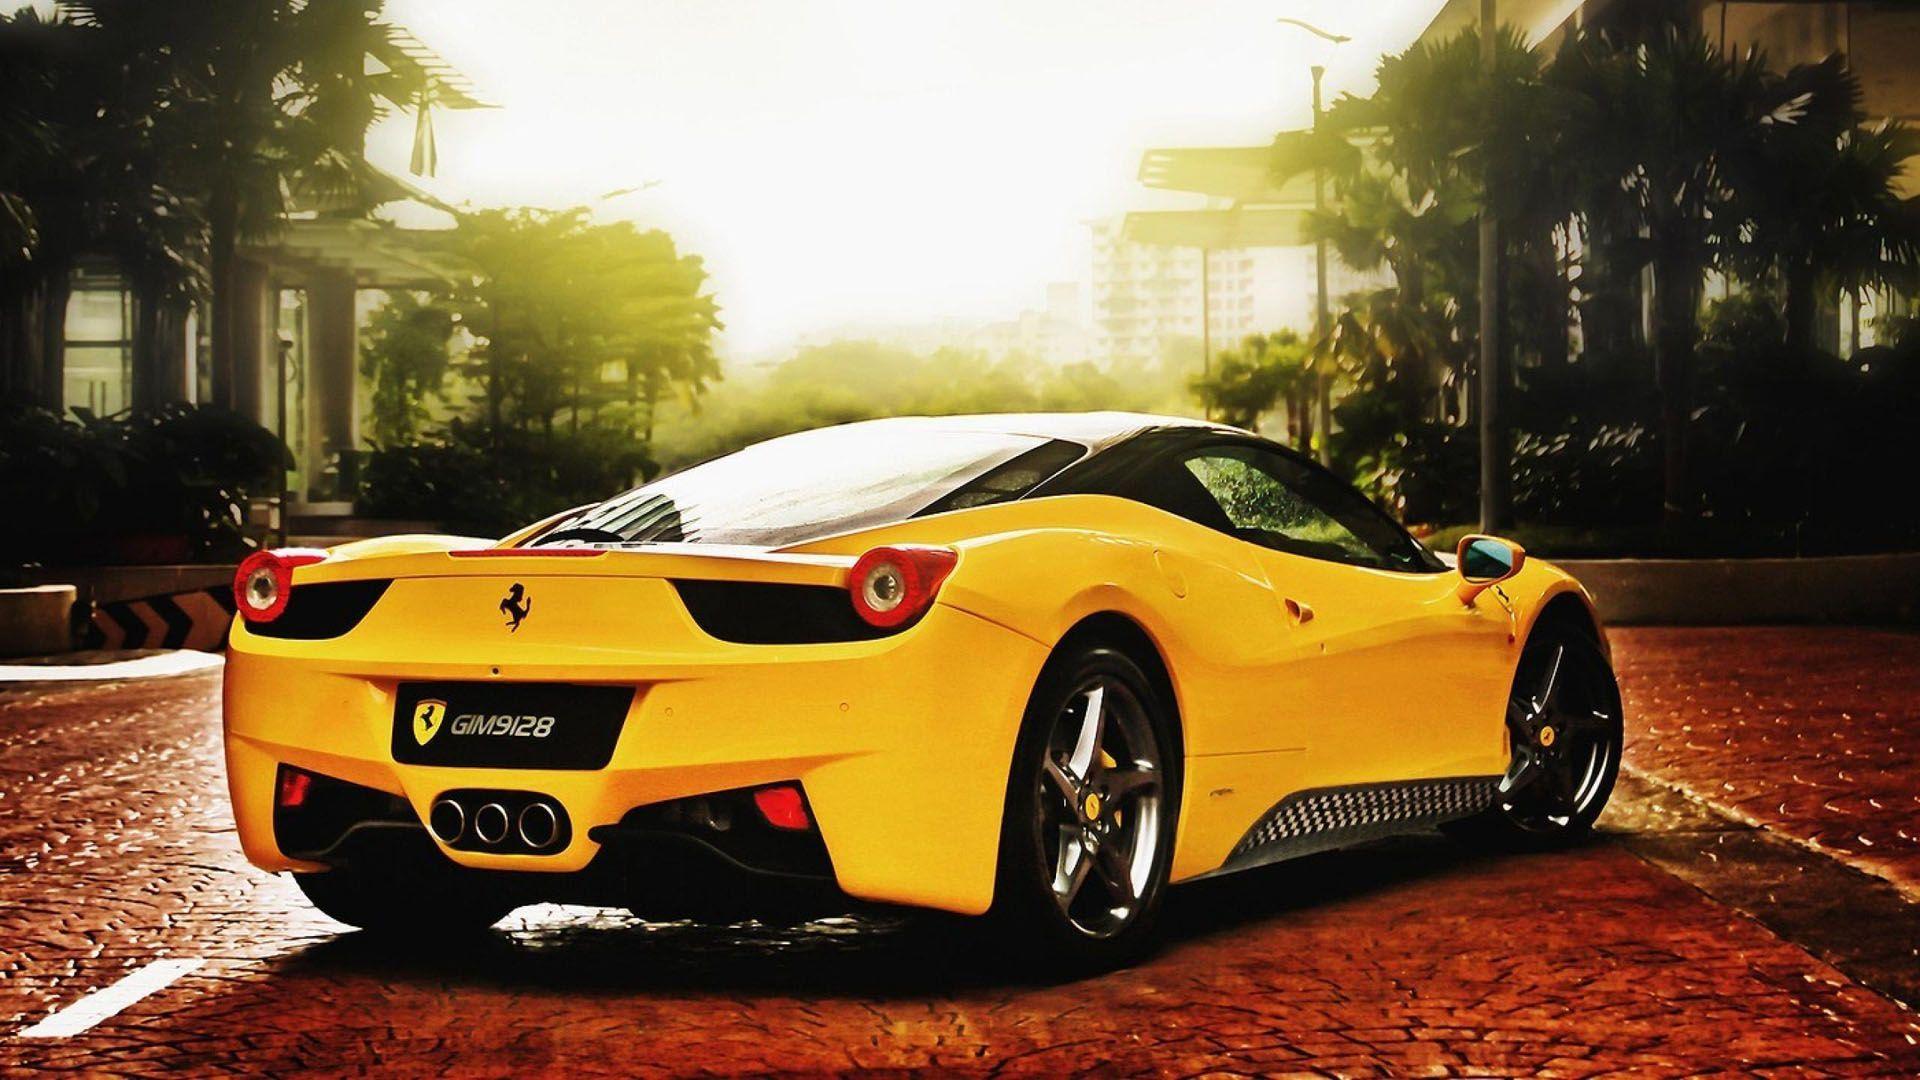 Greats Ferrari Cars HD Wallpaper 1080p To Pics F1ct With Ferrari